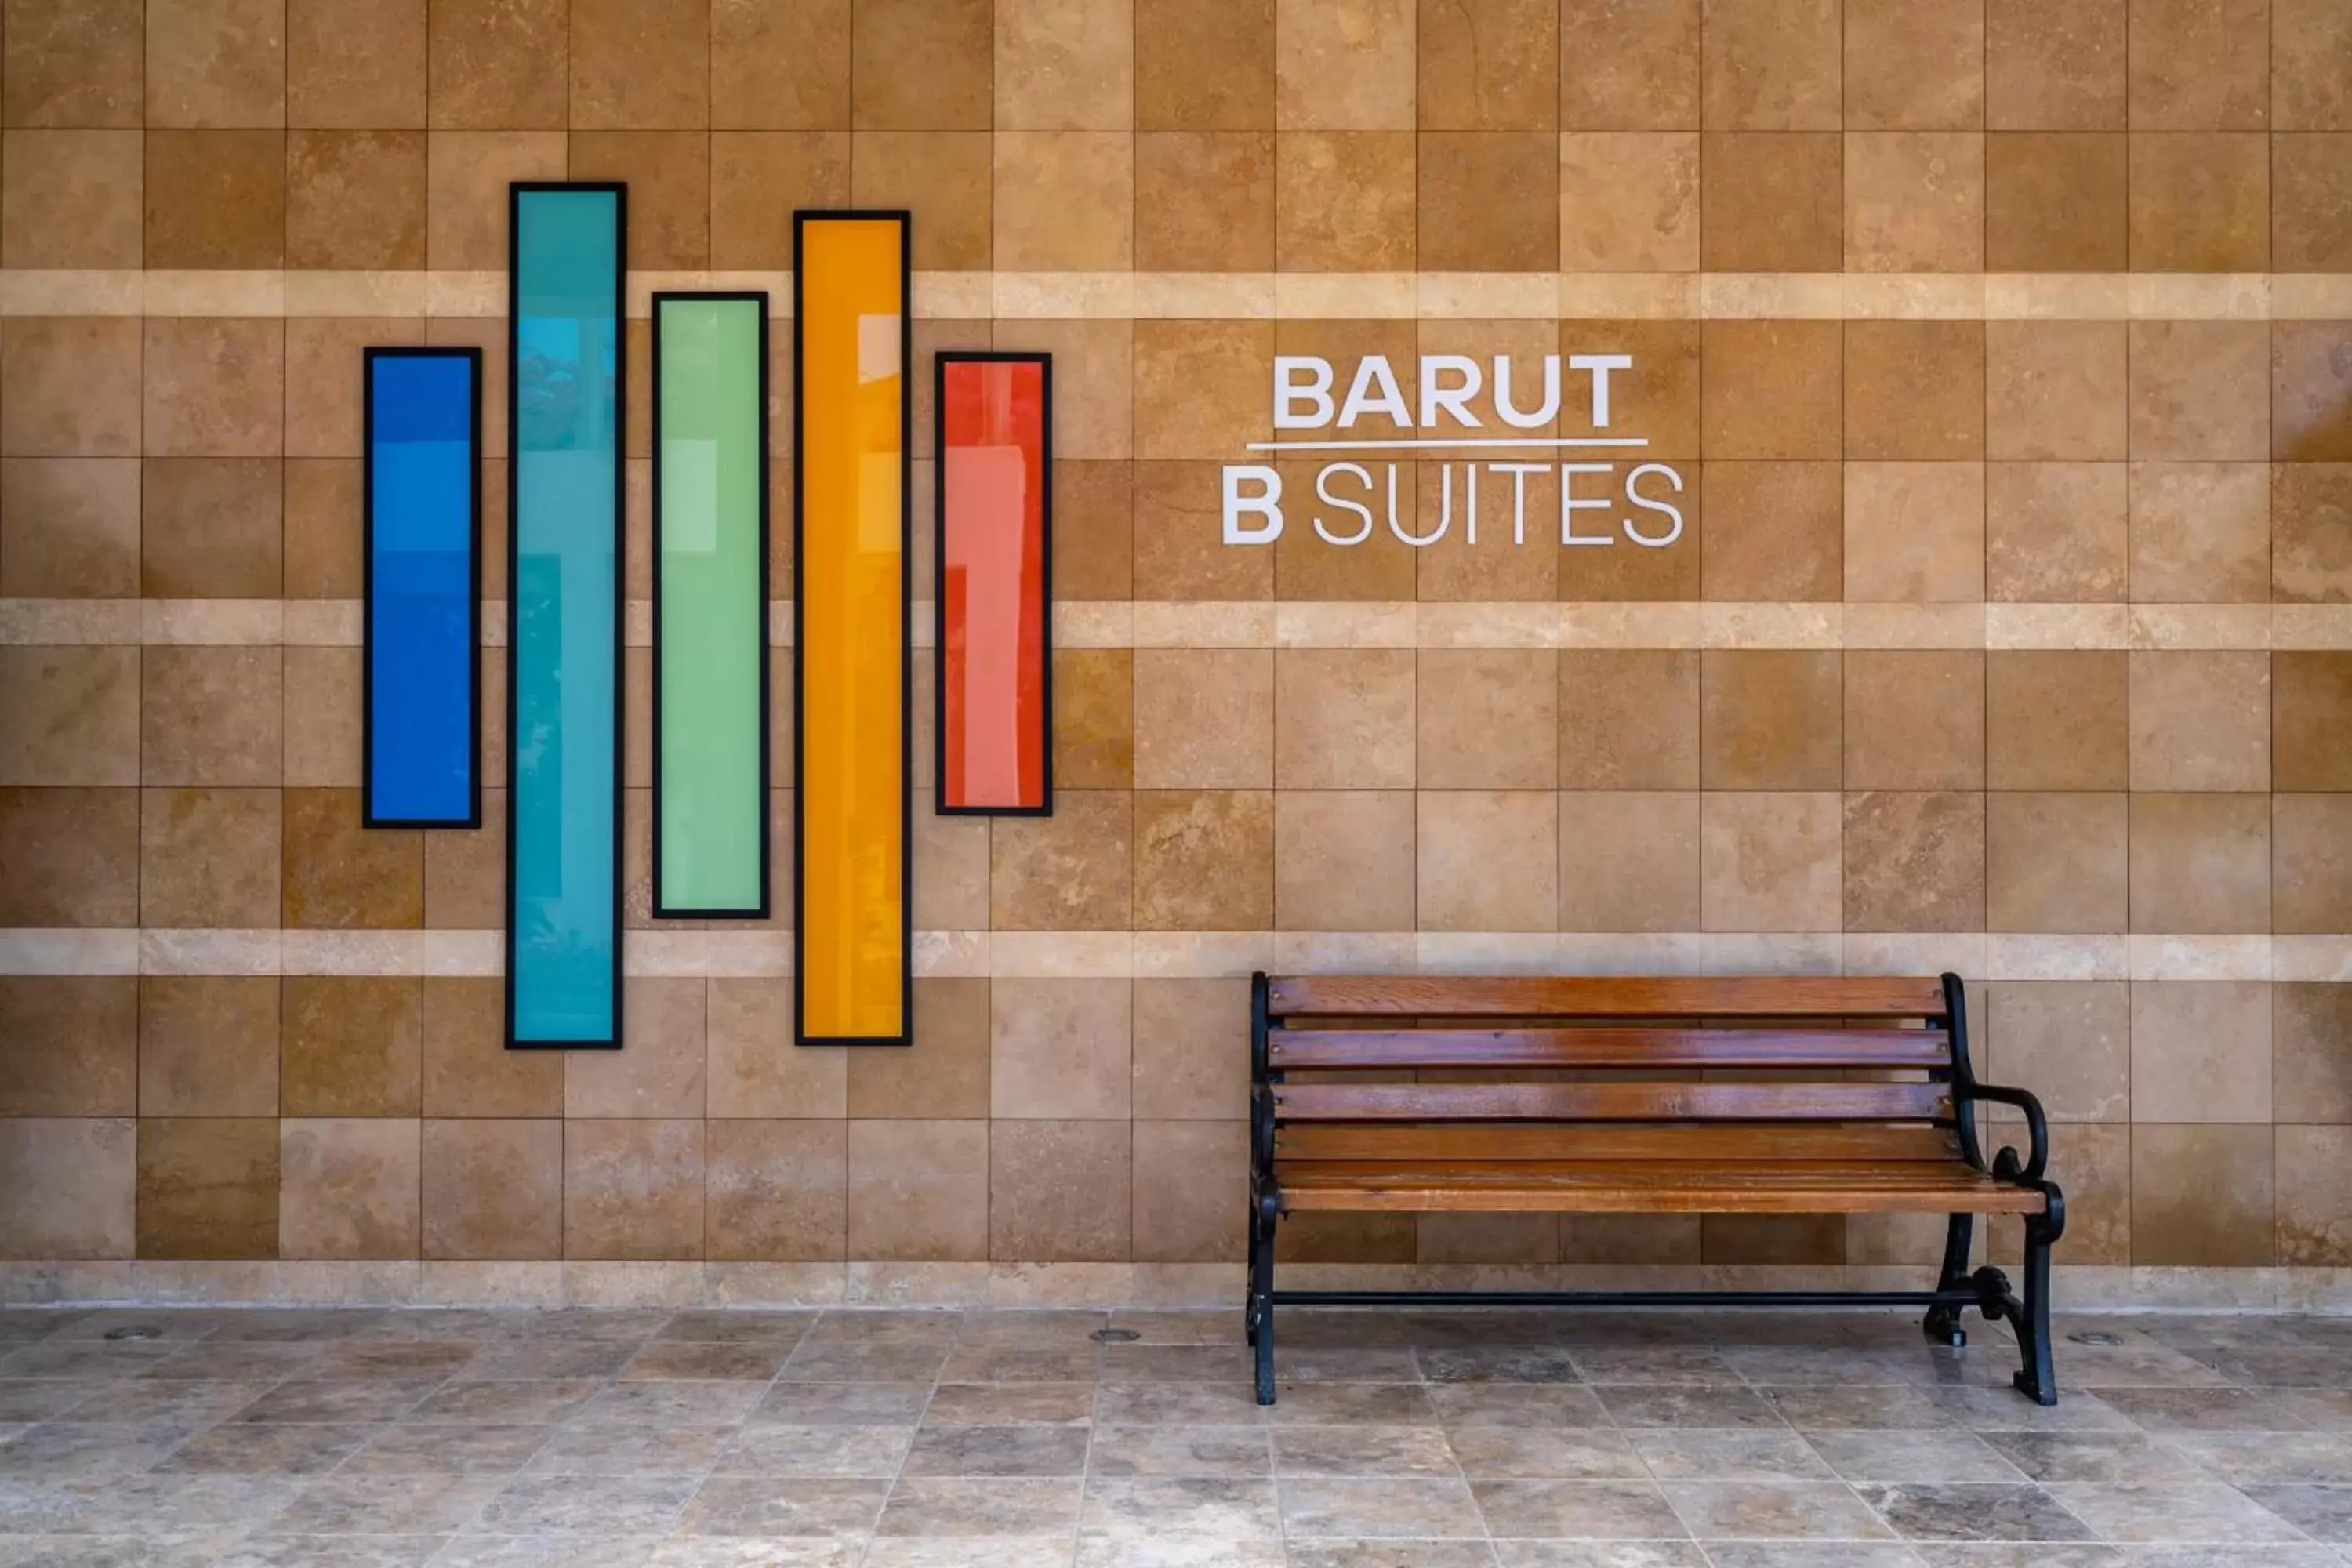 Facade/entrance in Barut B Suites